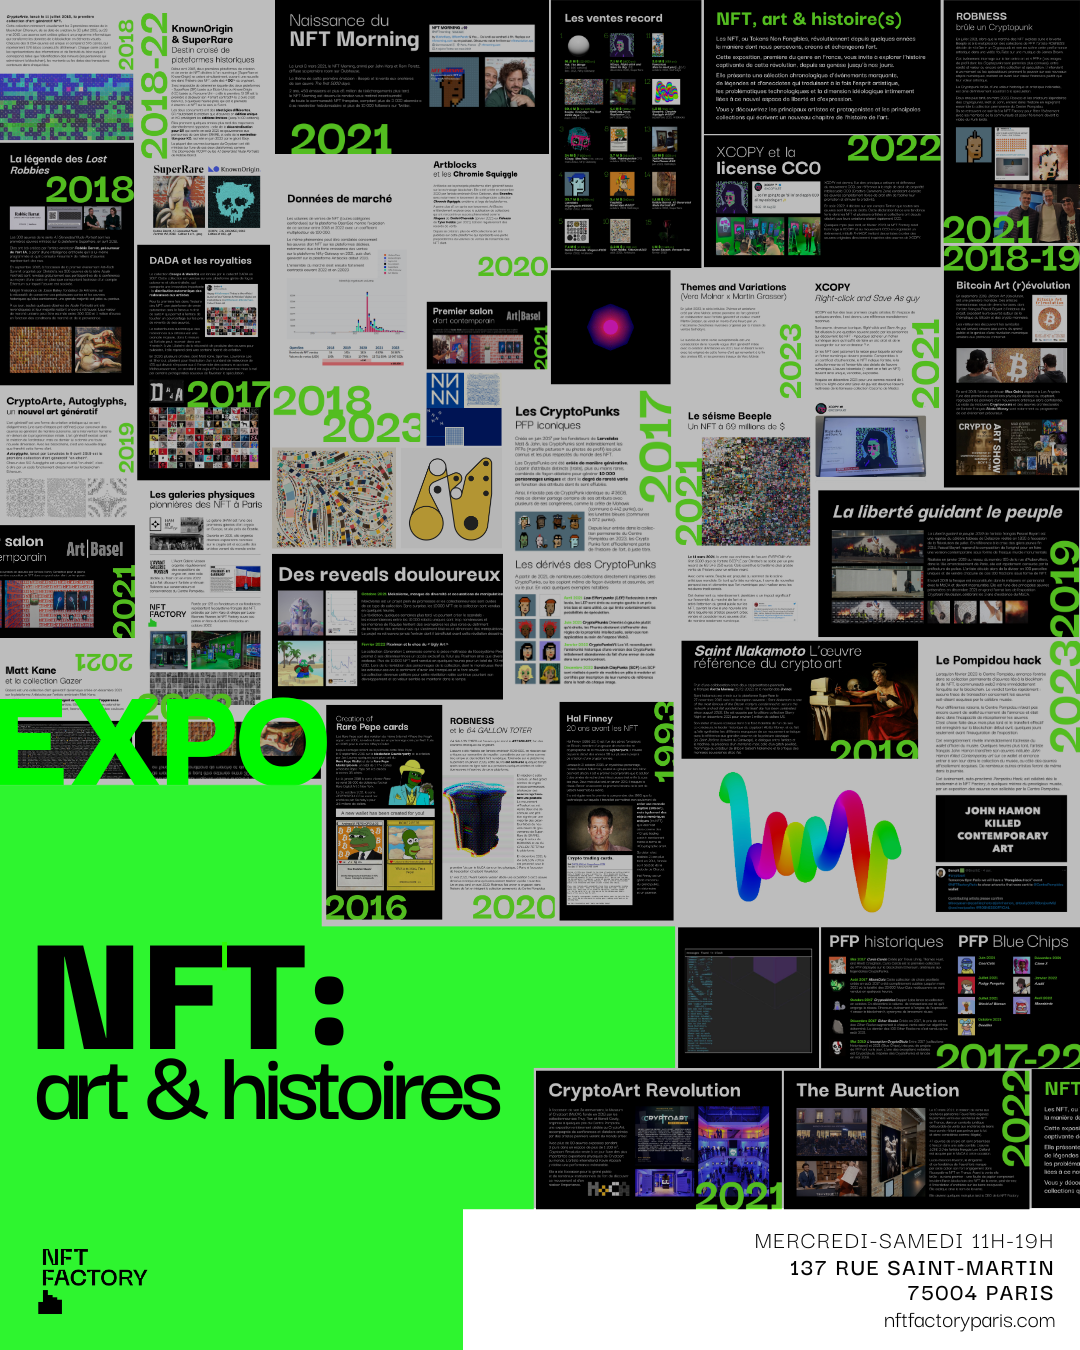 Billet d'entrée "NFT : art & histoires" - Gratuité